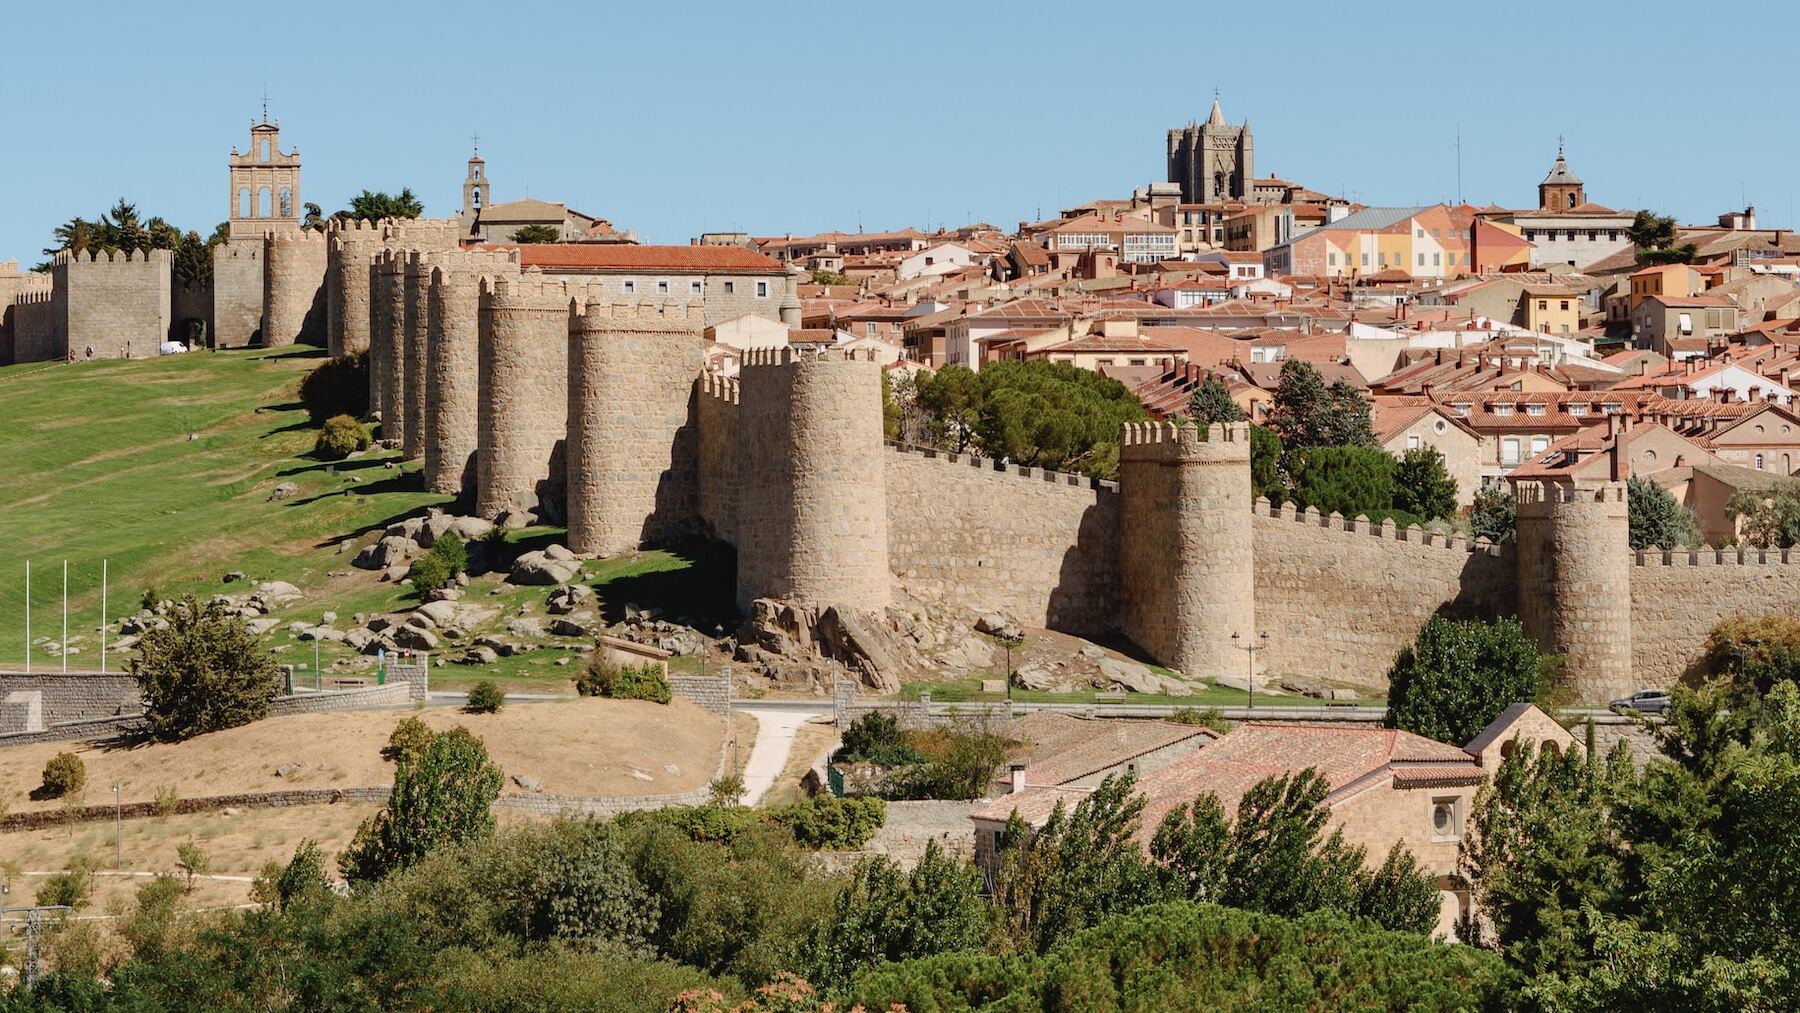 La ciudad medieval de España con la muralla mejor conservada de Europa. Se come barato y es preciosa